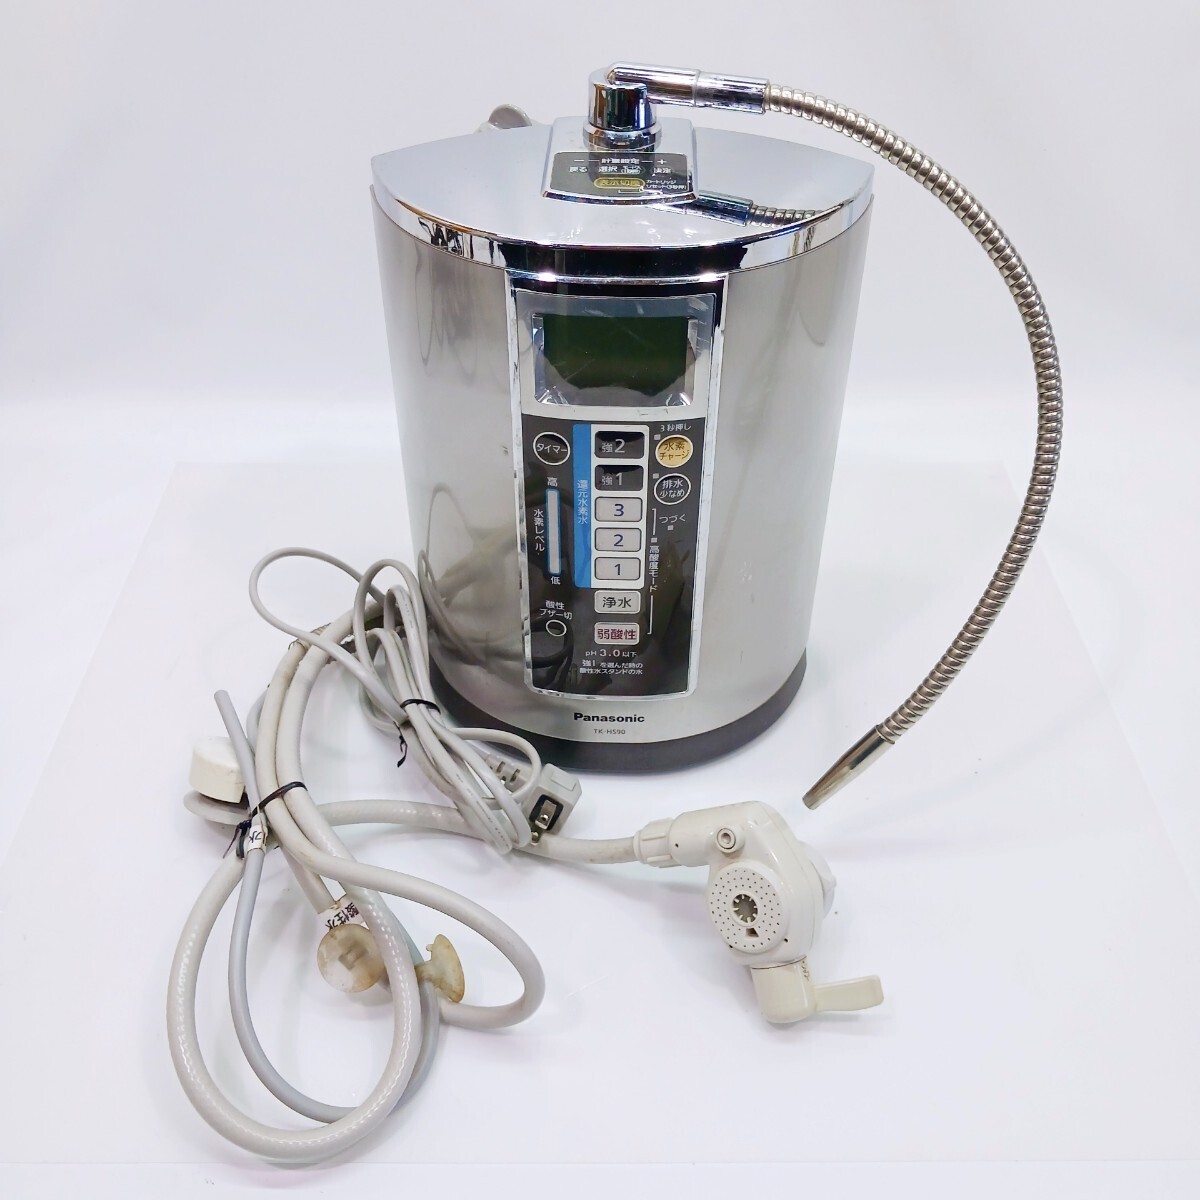 Panasonic 浄水器 TK-HS90 連続式電解水生成器 還元水素水生成器 パナソニック ジャンク_画像1